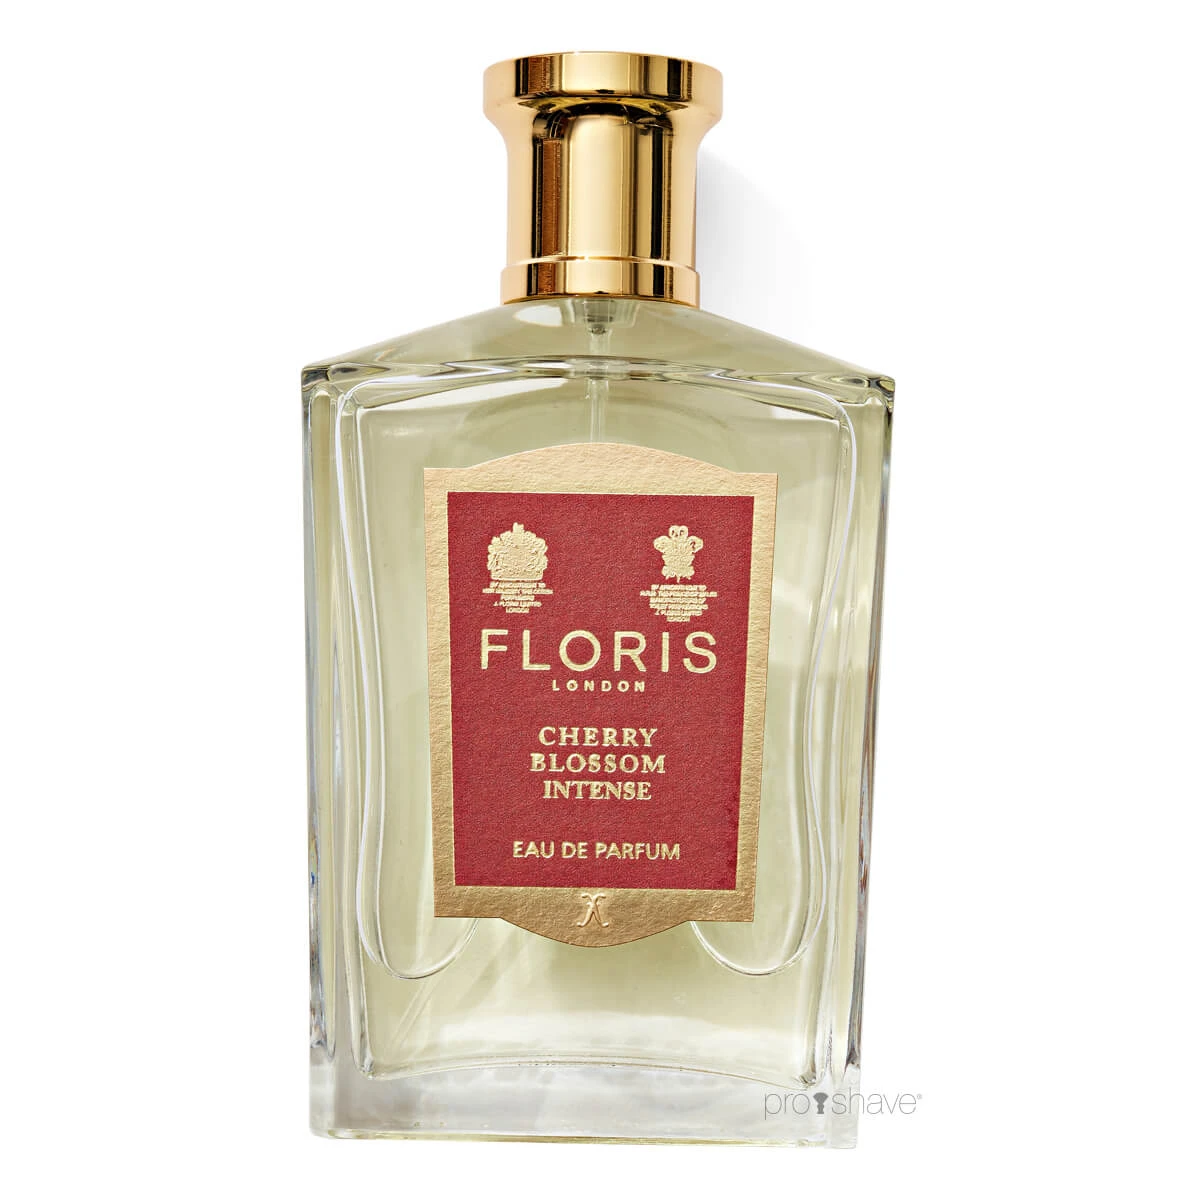 Eau de Parfum in 100 ml. from Floris Cherry Blossom Intense